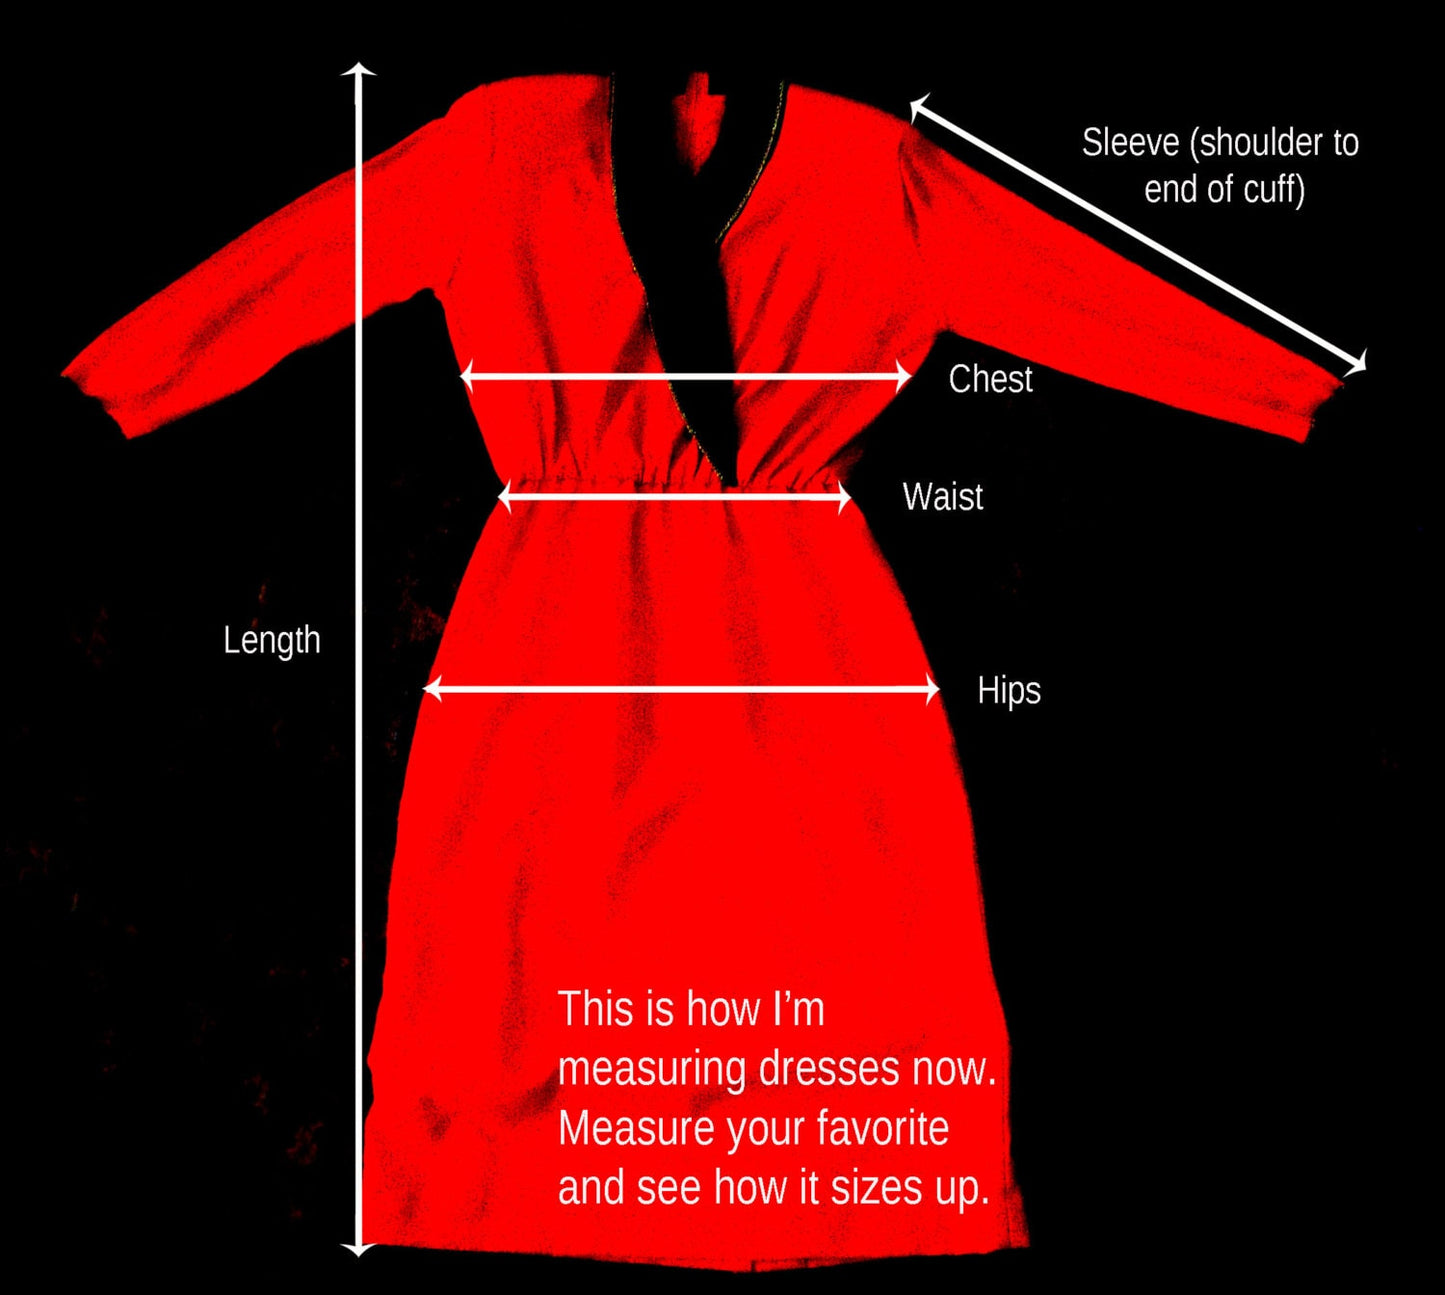 Vintage Long Sleeve Dress by Jo Y's